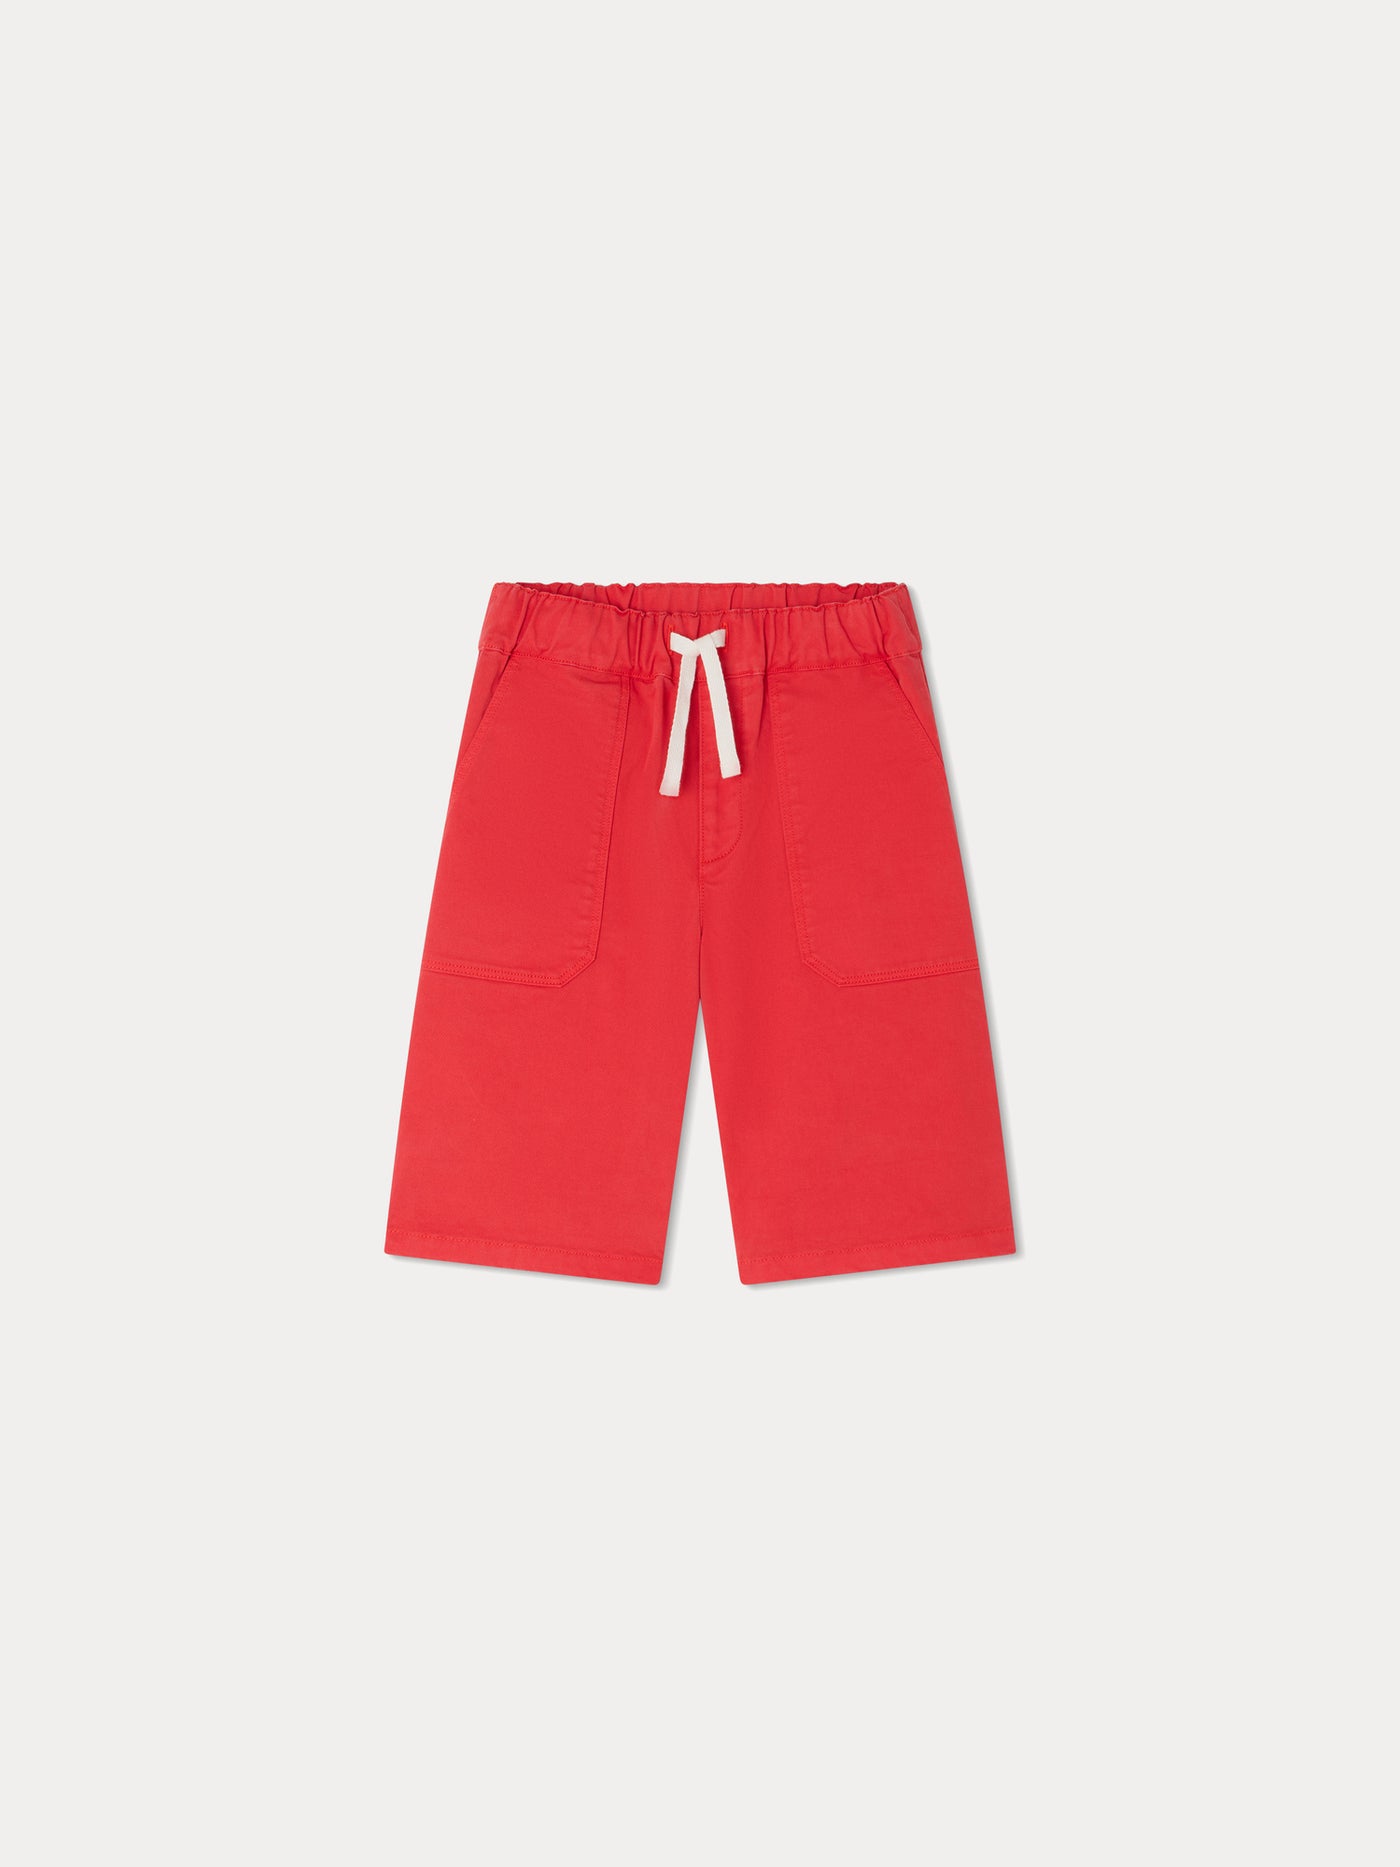 Syl Bermuda Shorts poppy red